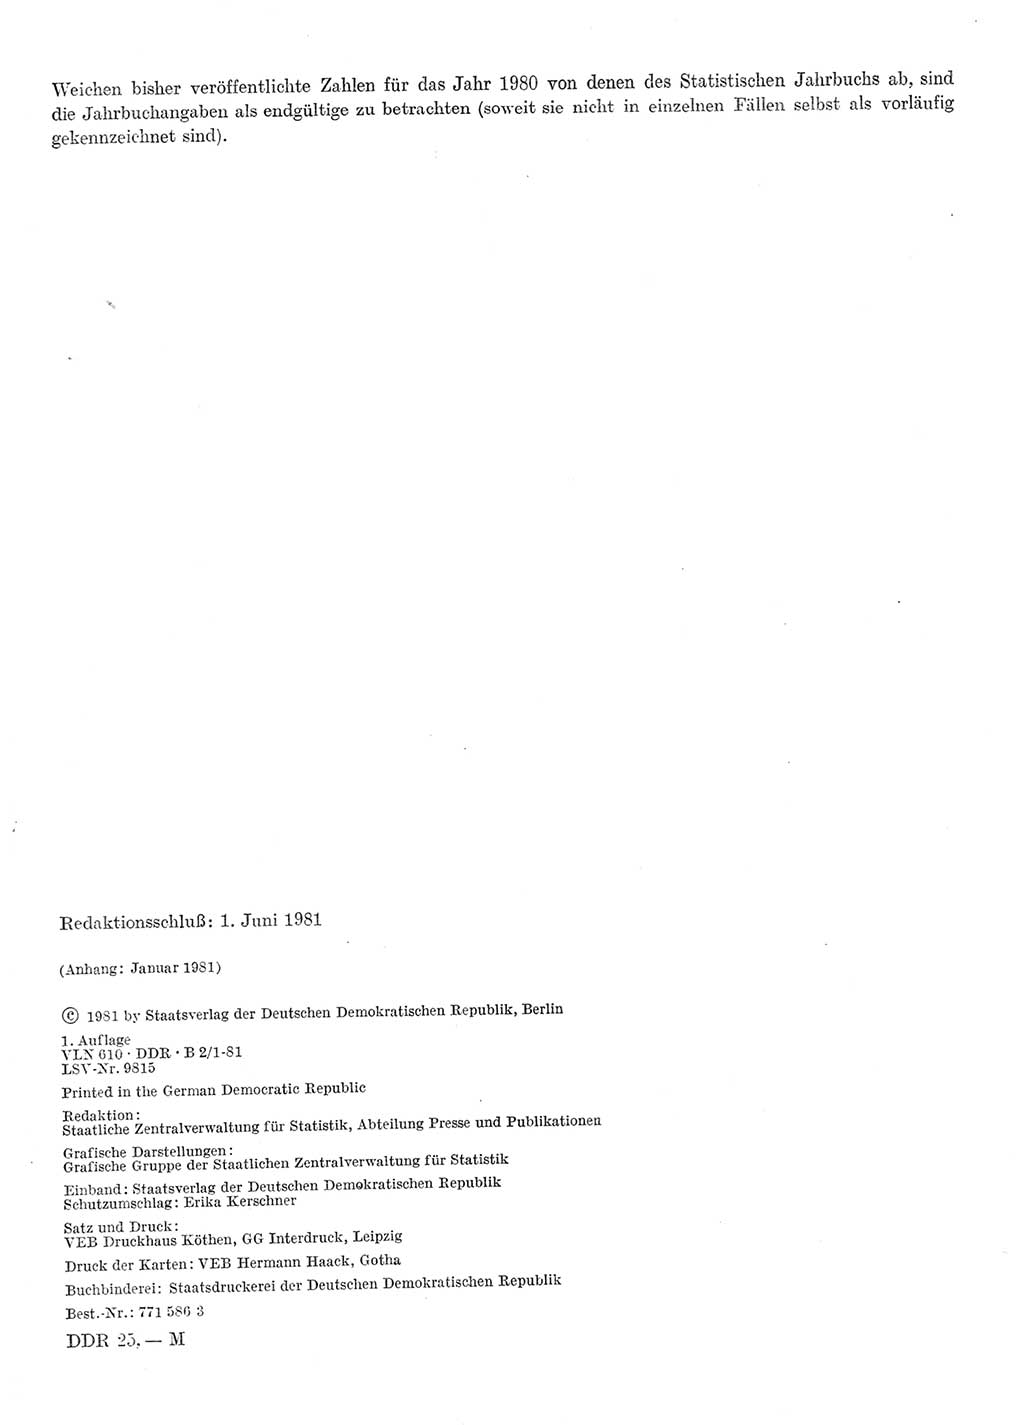 Statistisches Jahrbuch der Deutschen Demokratischen Republik (DDR) 1981, Seite 2 (Stat. Jb. DDR 1981, S. 2)